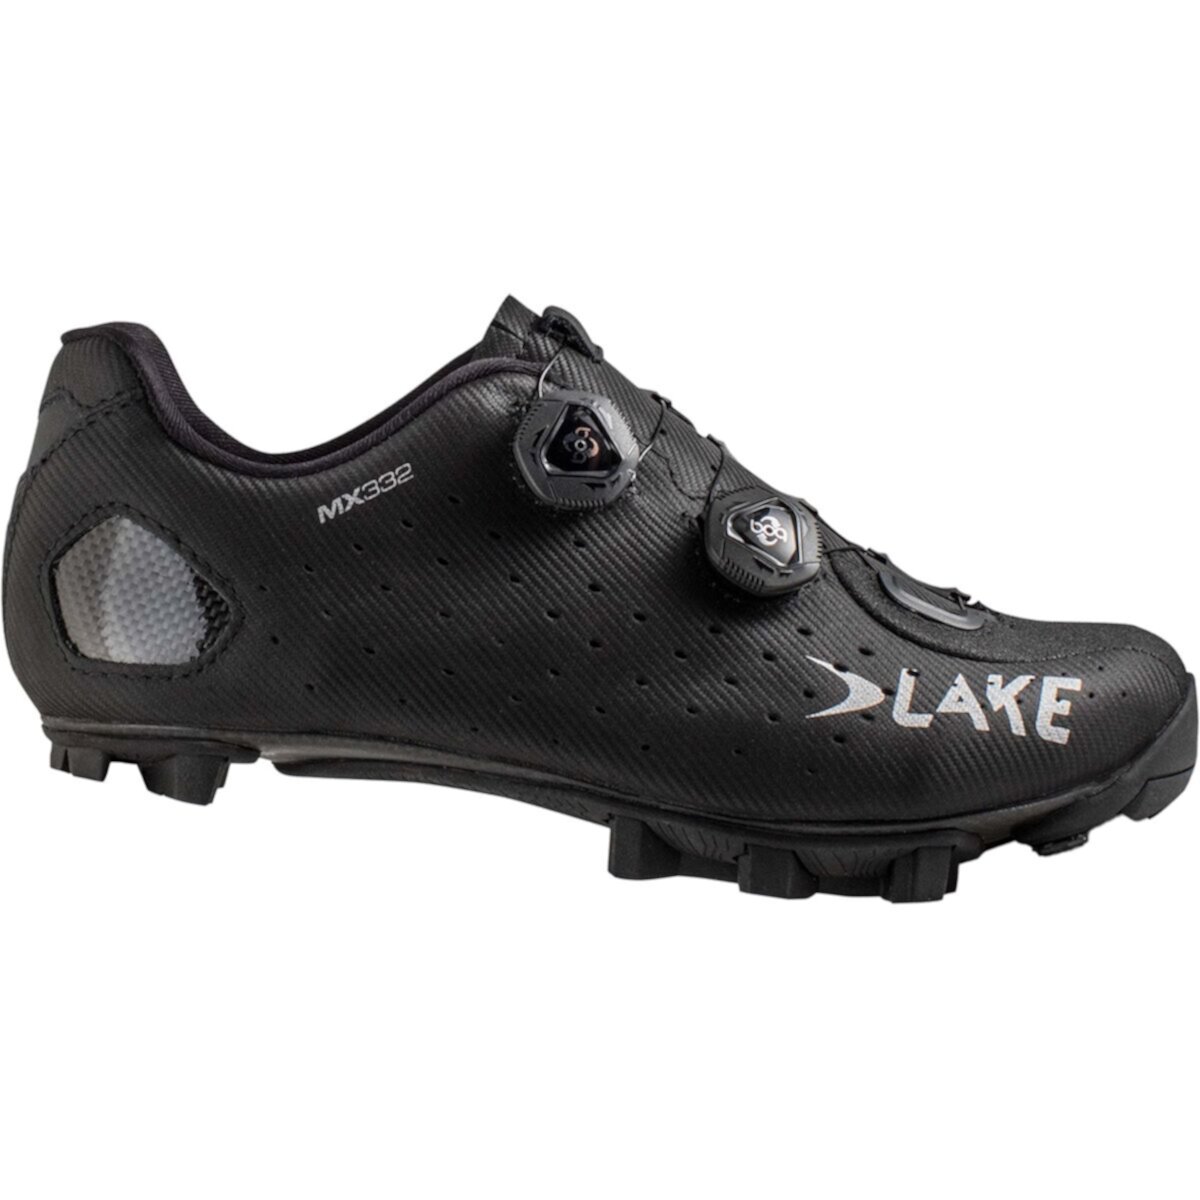 Велосипедная обувь MX332 Lake